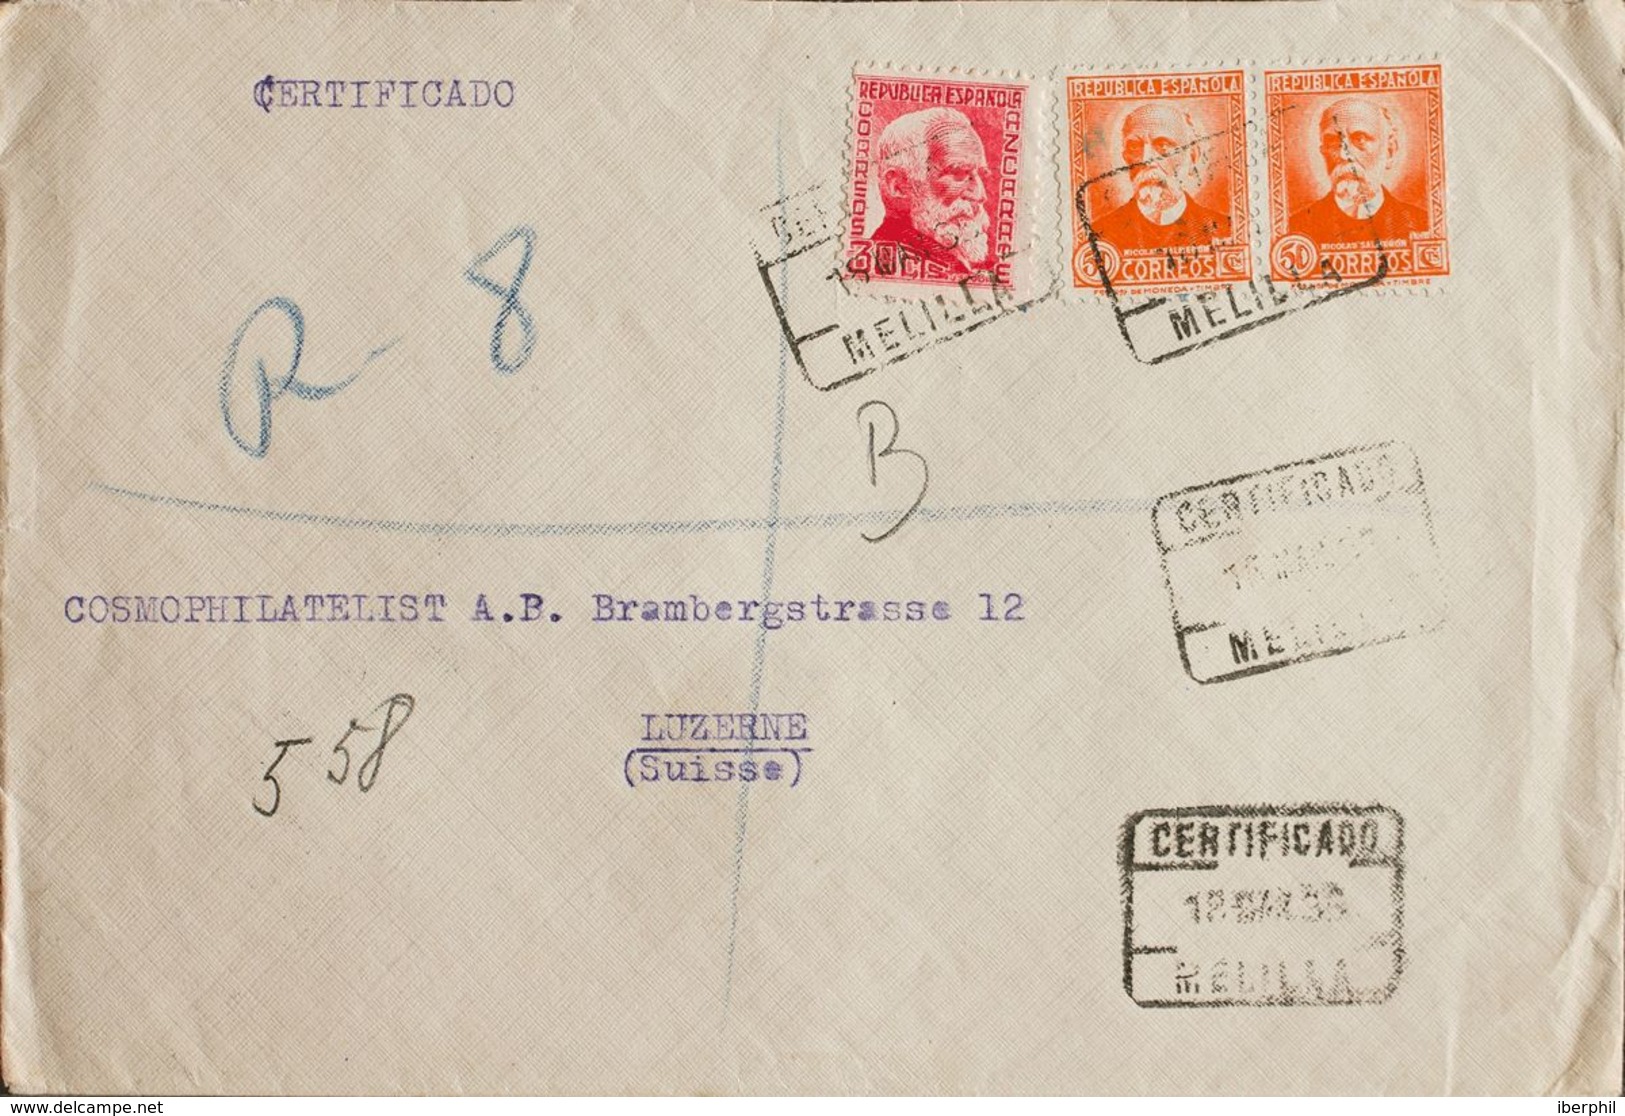 España. República Española Correo Certificado. Sobre 686, 671(2). 1935. 30 Cts Rosa Y 50 Cts Naranja, Dos Sellos. Certif - Lettres & Documents